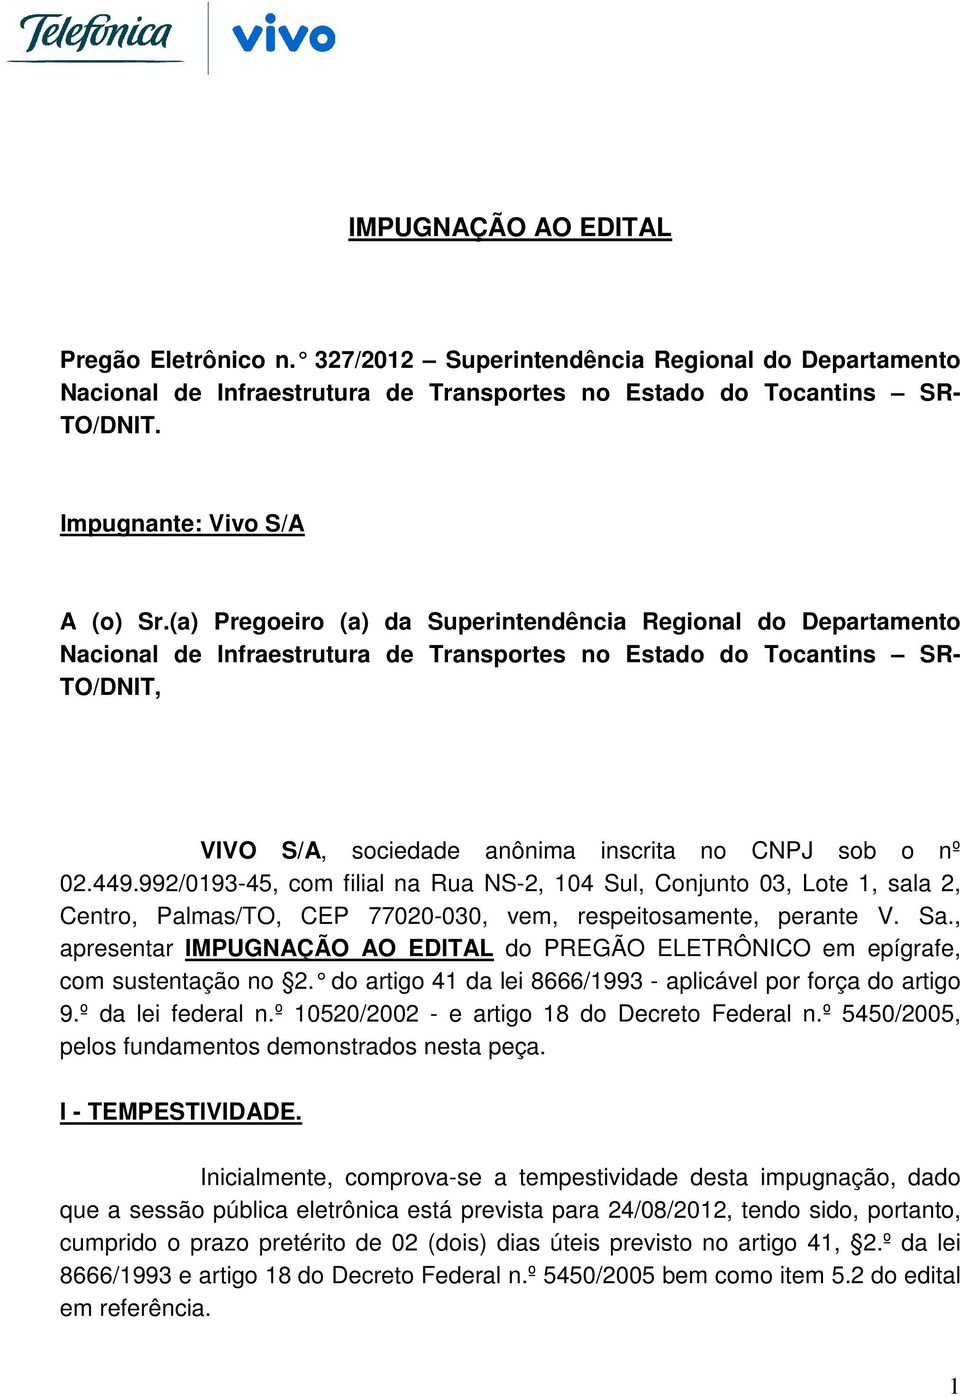 (a) Pregoeiro (a) da Superintendência Regional do Departamento Nacional de Infraestrutura de Transportes no Estado do Tocantins SR- TO/DNIT, VIVO S/A, sociedade anônima inscrita no CNPJ sob o nº 02.